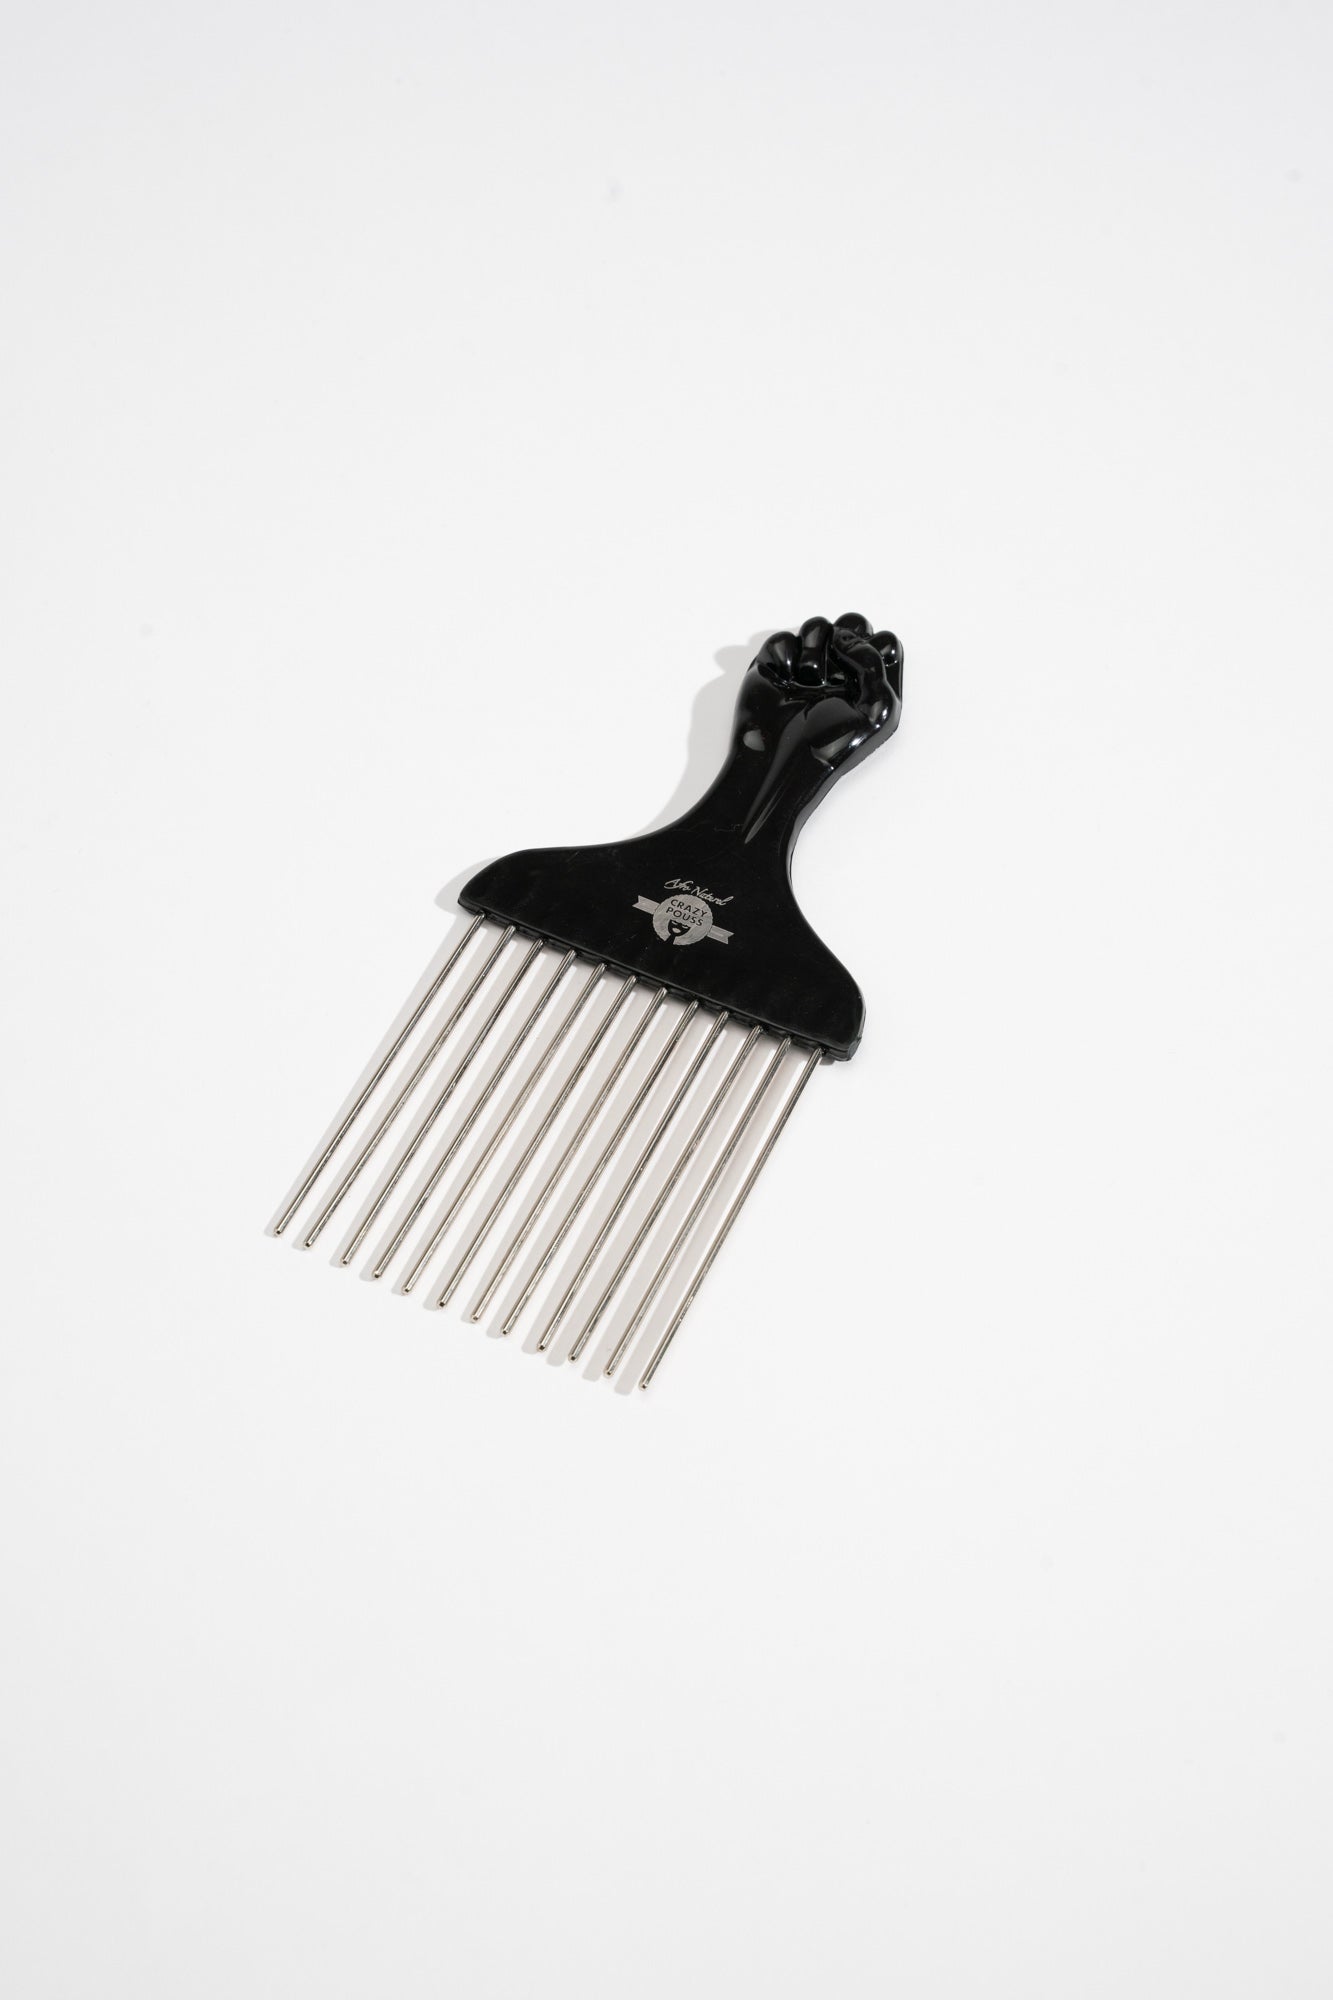 CRAZY POUSS - Peigne afro - noir - Accessoire pour peigner et démêler facilement vos cheveux épais, bouclés, crépus